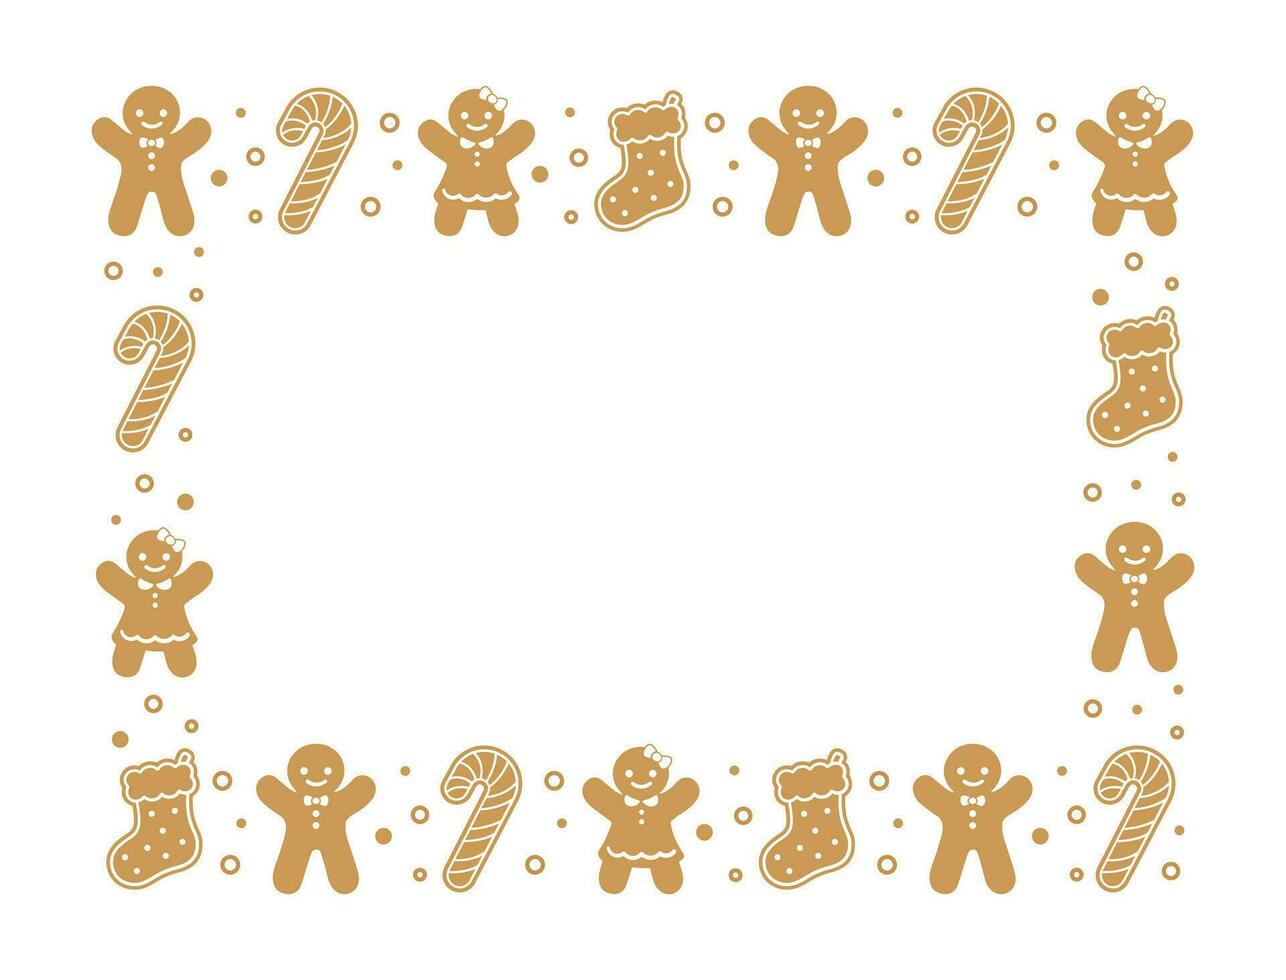 rectángulo pan de jengibre galletas marco borde, Navidad invierno fiesta gráficos. hecho en casa dulces patrón, tarjeta y social medios de comunicación enviar modelo en blanco antecedentes. aislado vector ilustración.